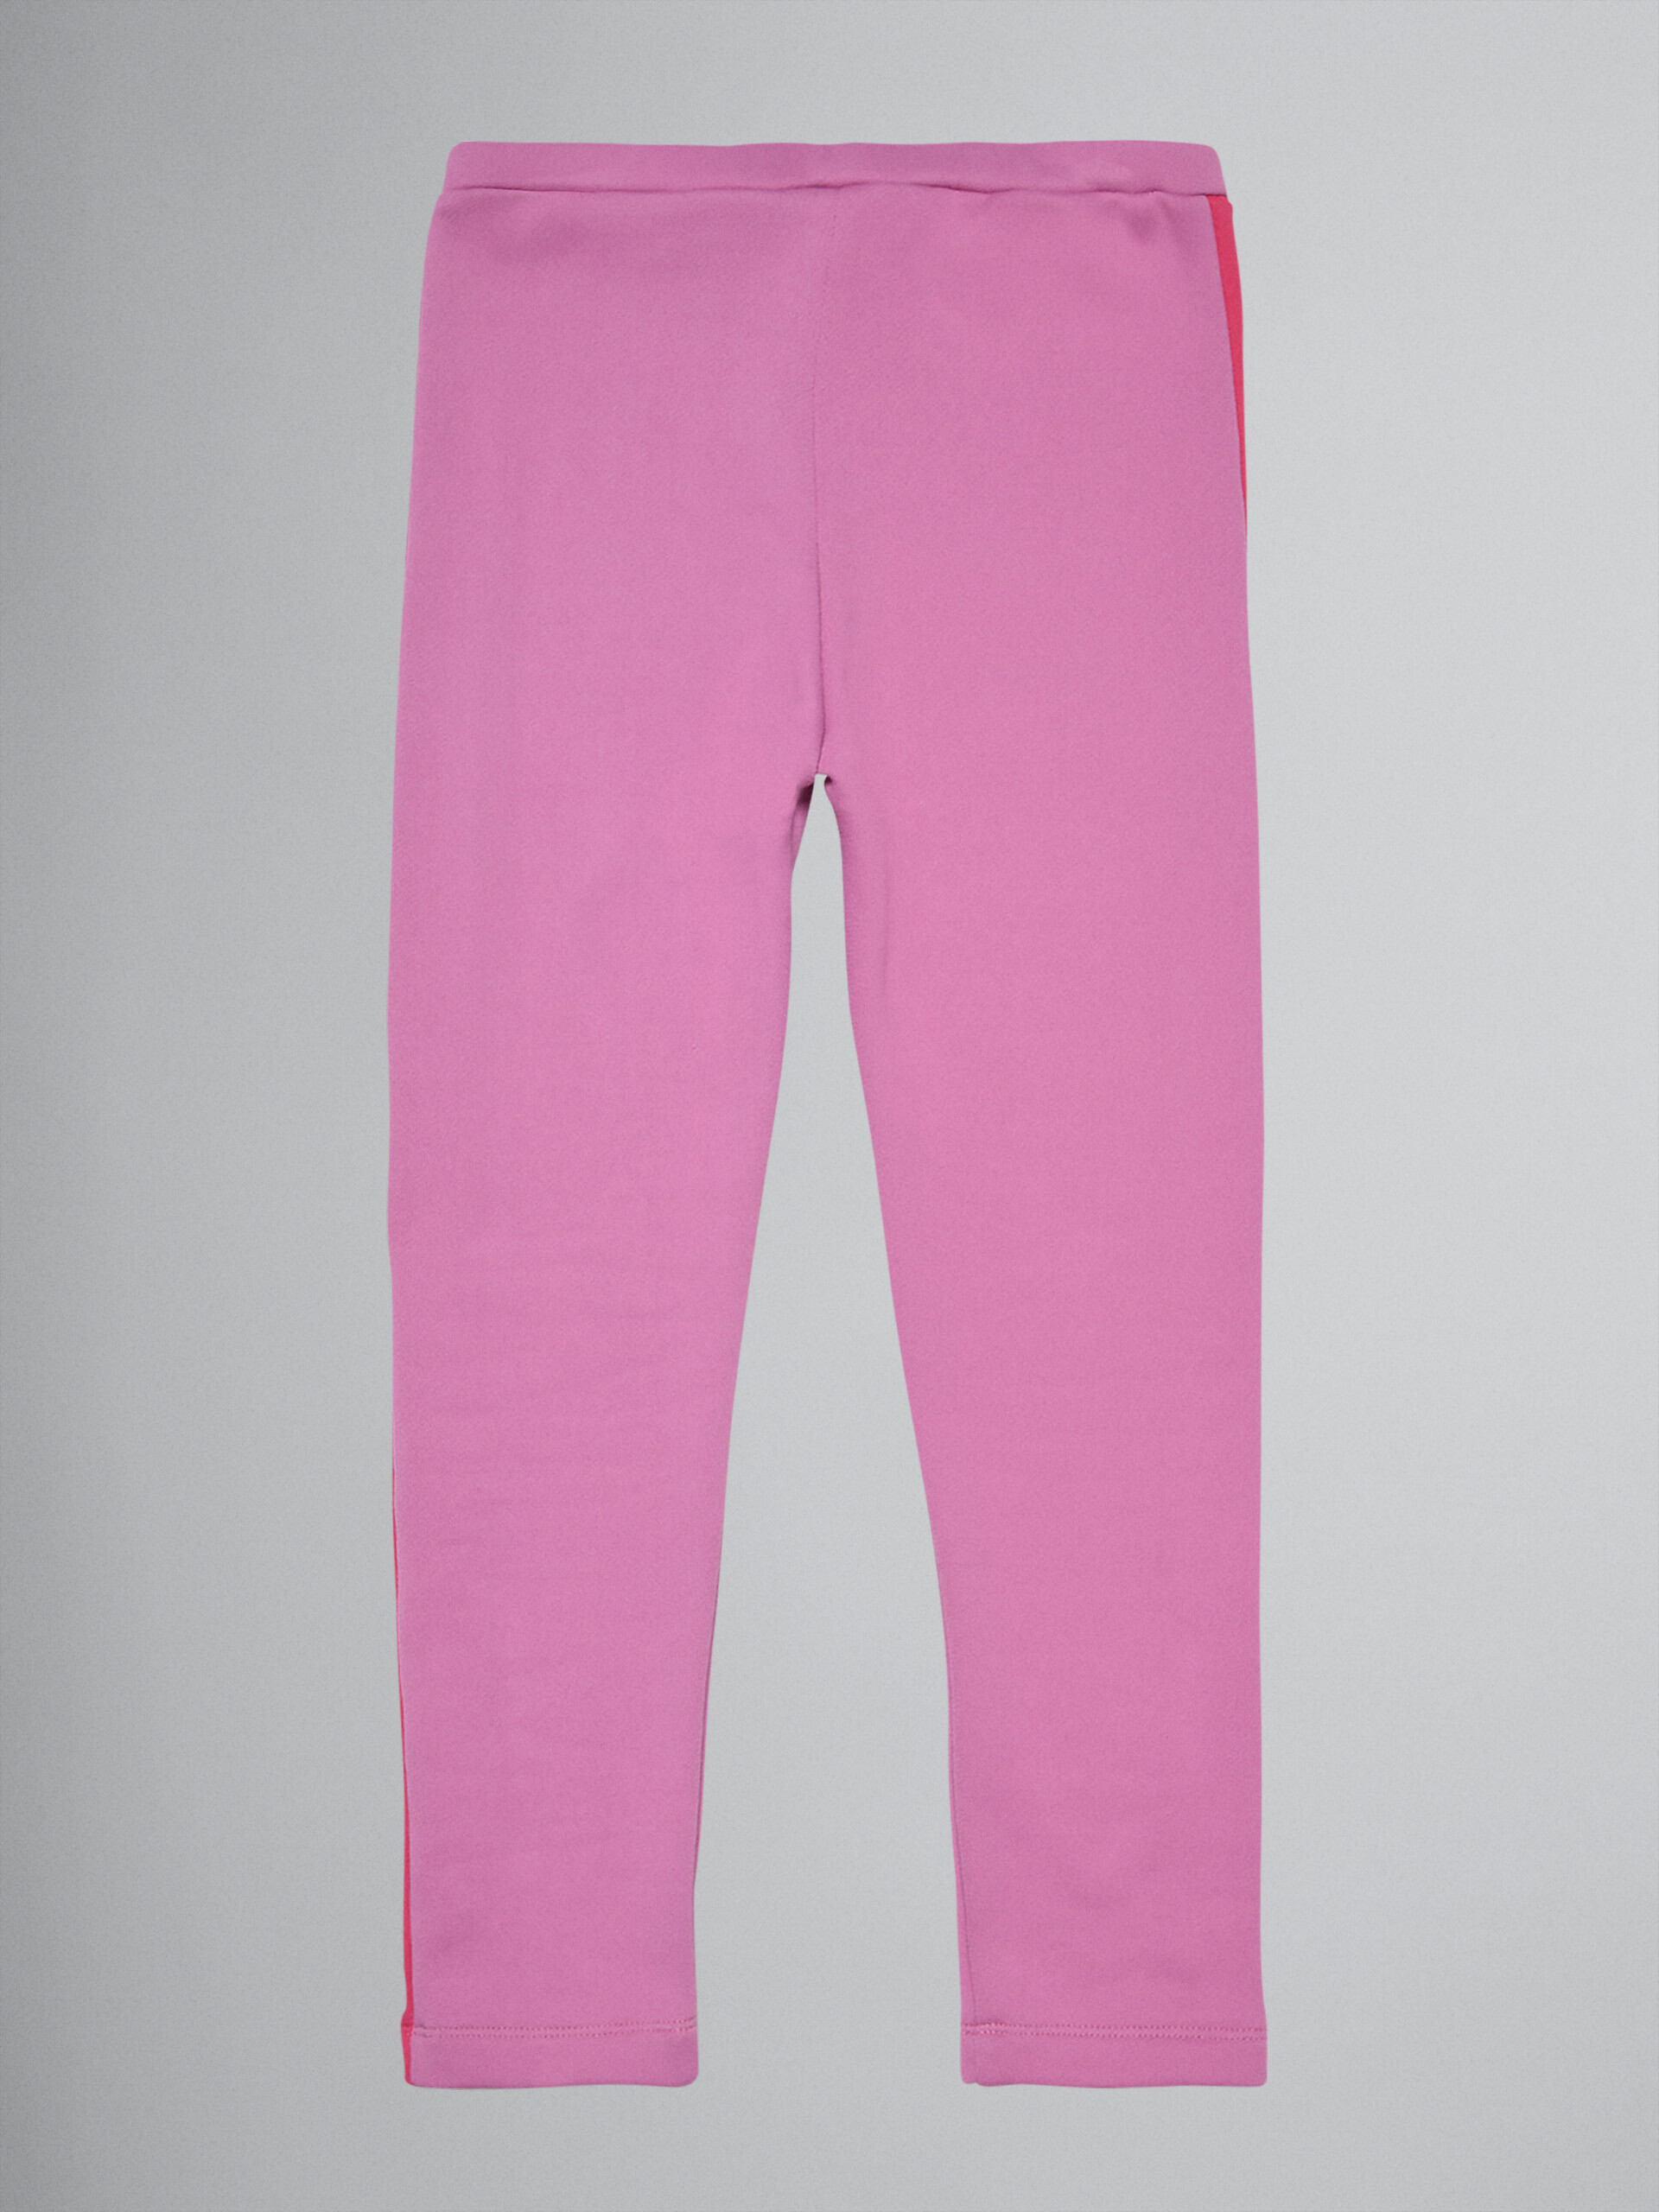 핑크 테크니컬 코튼 트랙 팬츠 - Pants - Image 2